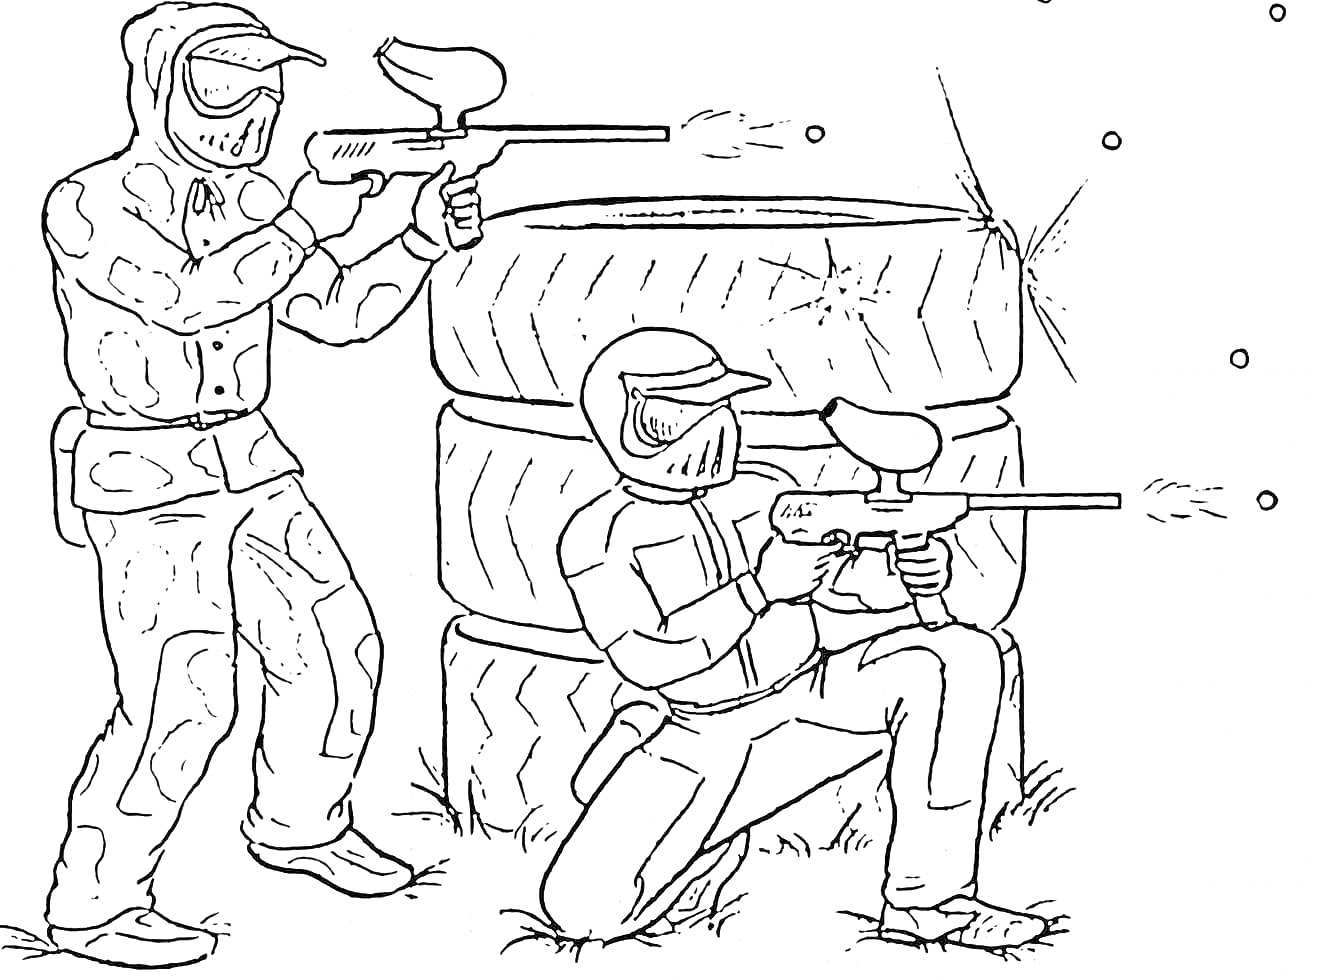 Игра в пейнтбол - два игрока с ружьями, спрятанные за покрышками